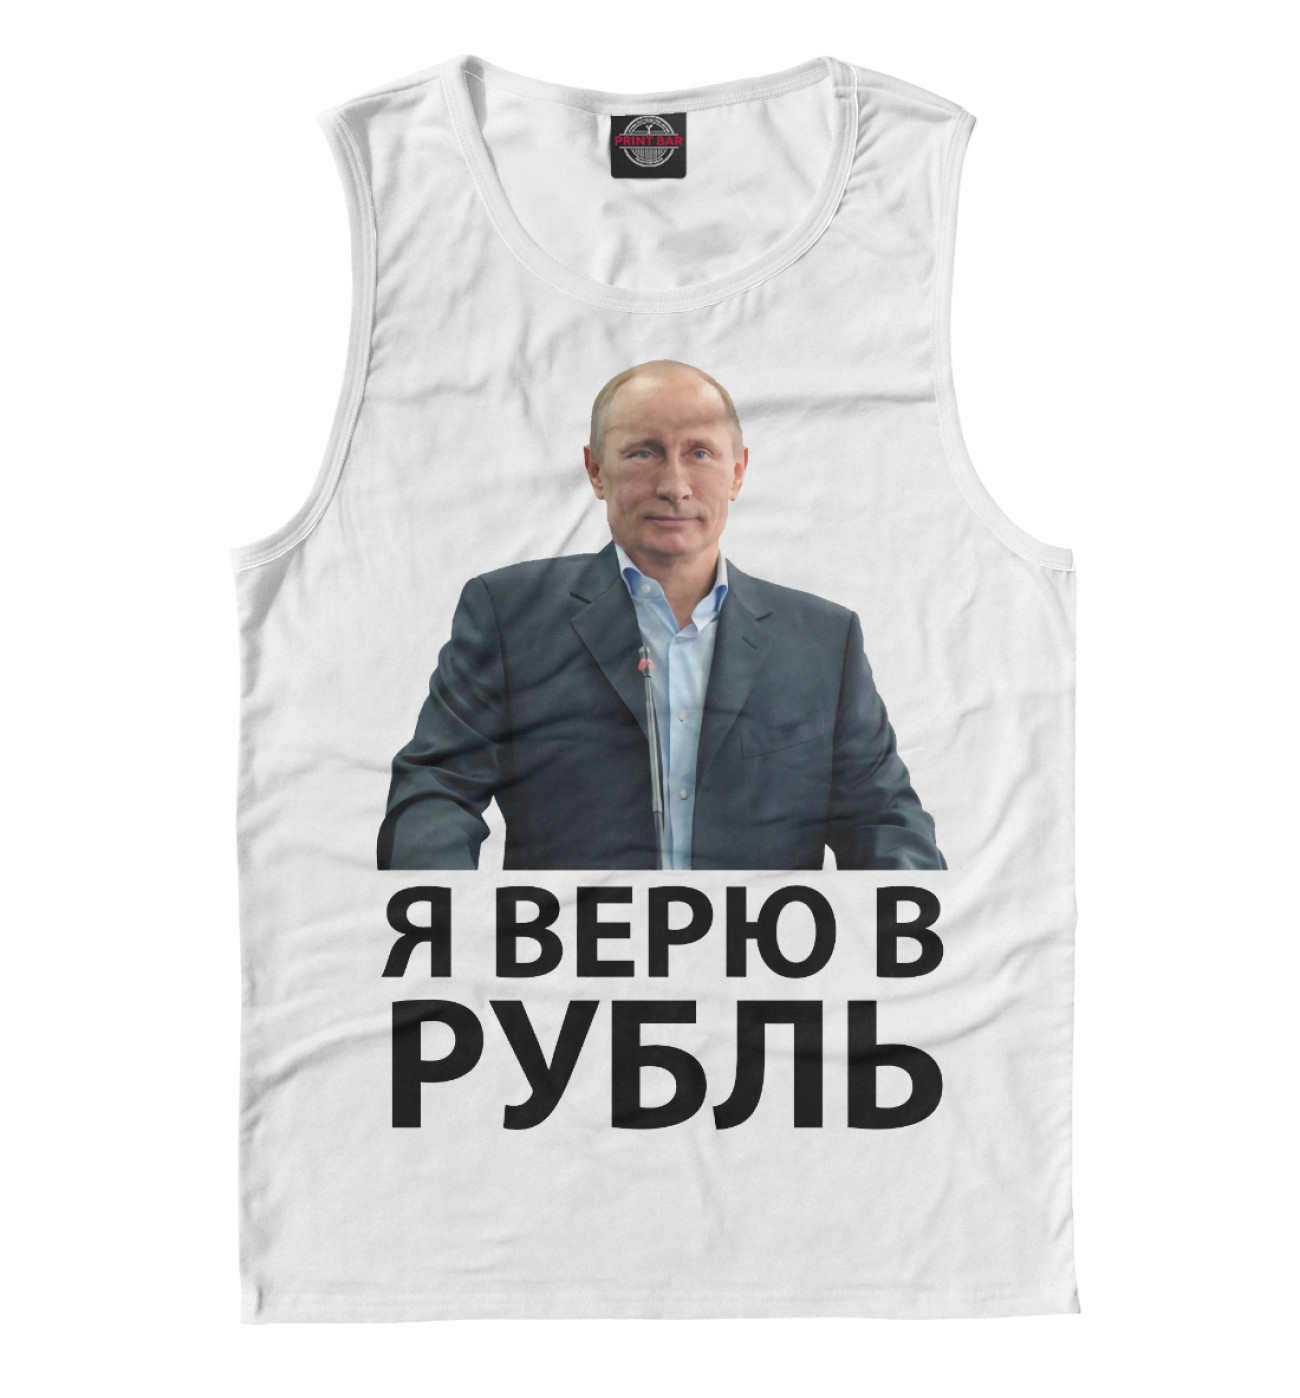 Рублей футболки. Футболка рубль. Футболка с Путиным верю в рубль. Я верю в рубль. Во что я верю.